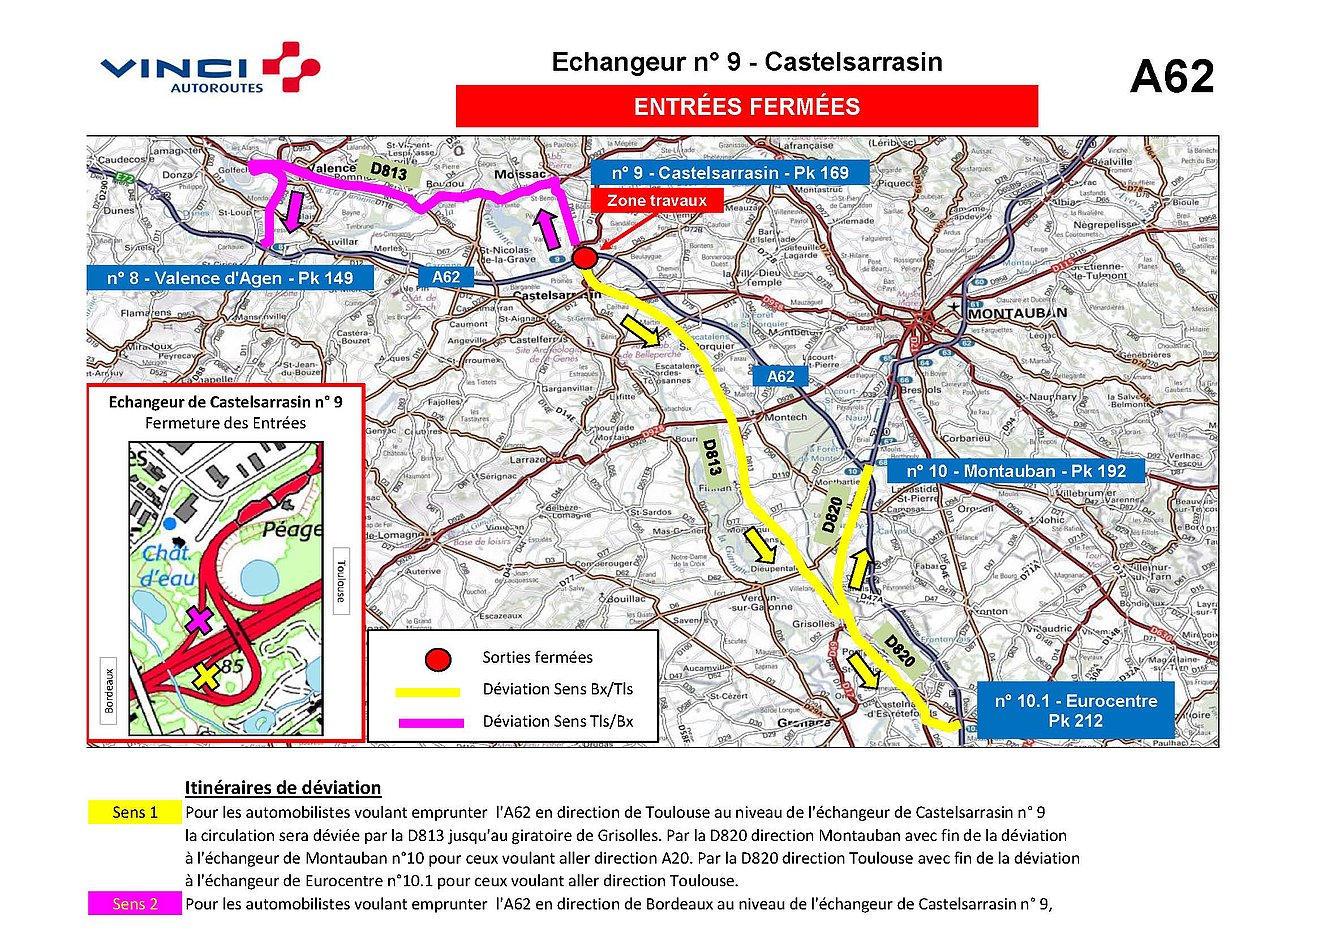 Plan de déviation pour les entrées au niveau de l'échangeur de Castelsarrasin